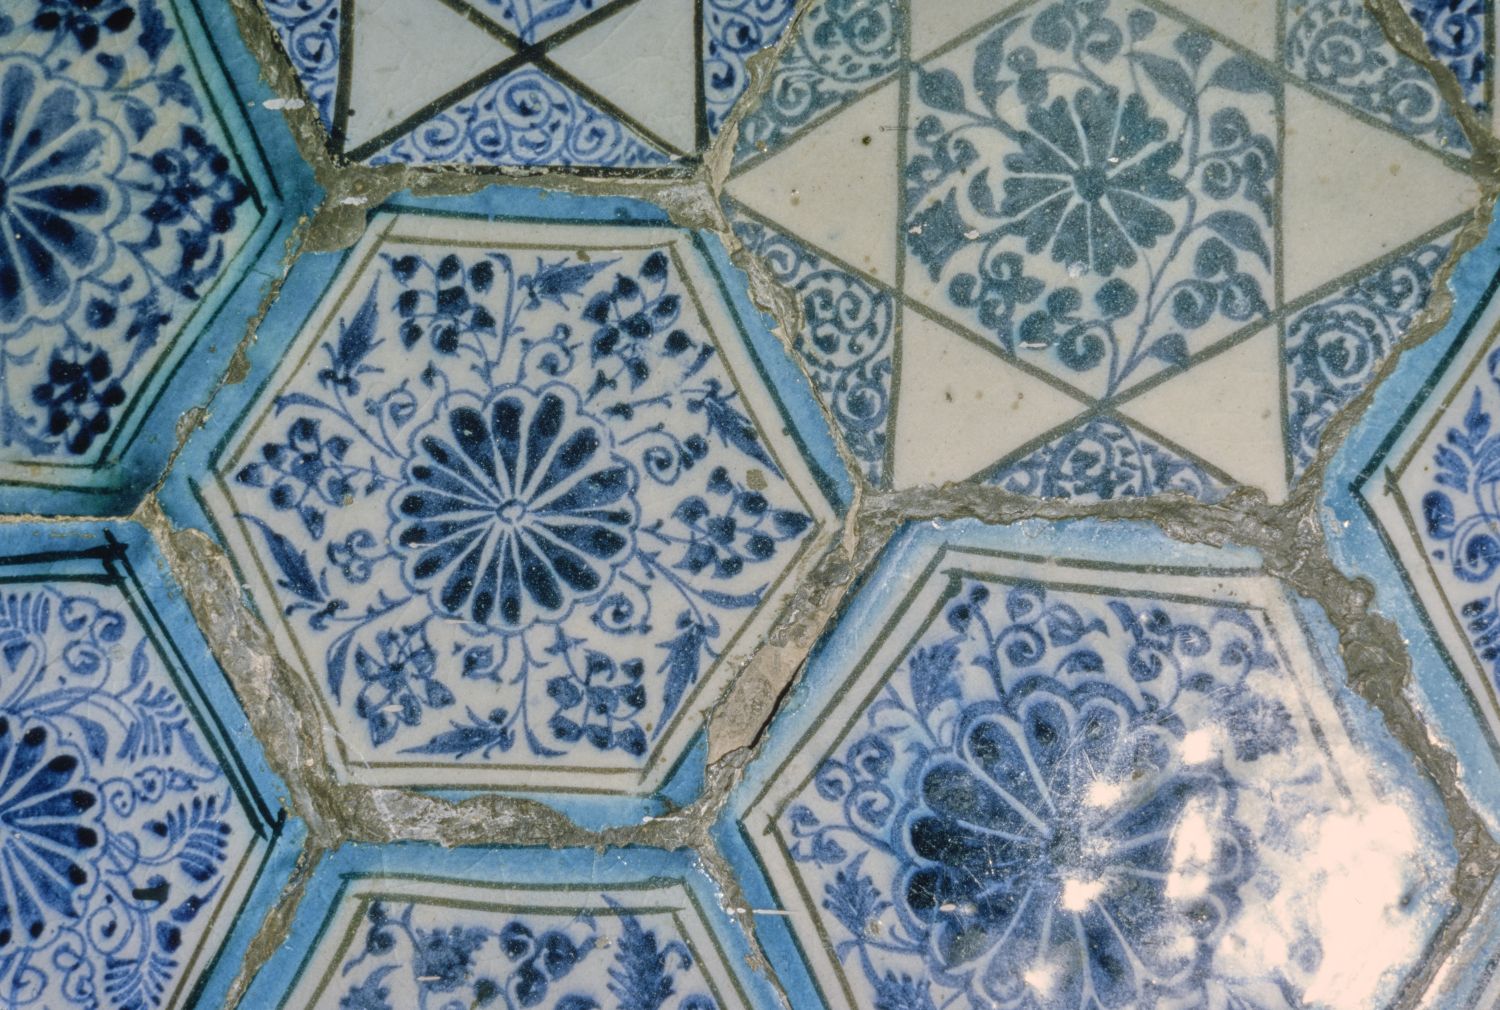 Detail view of tile revetment.